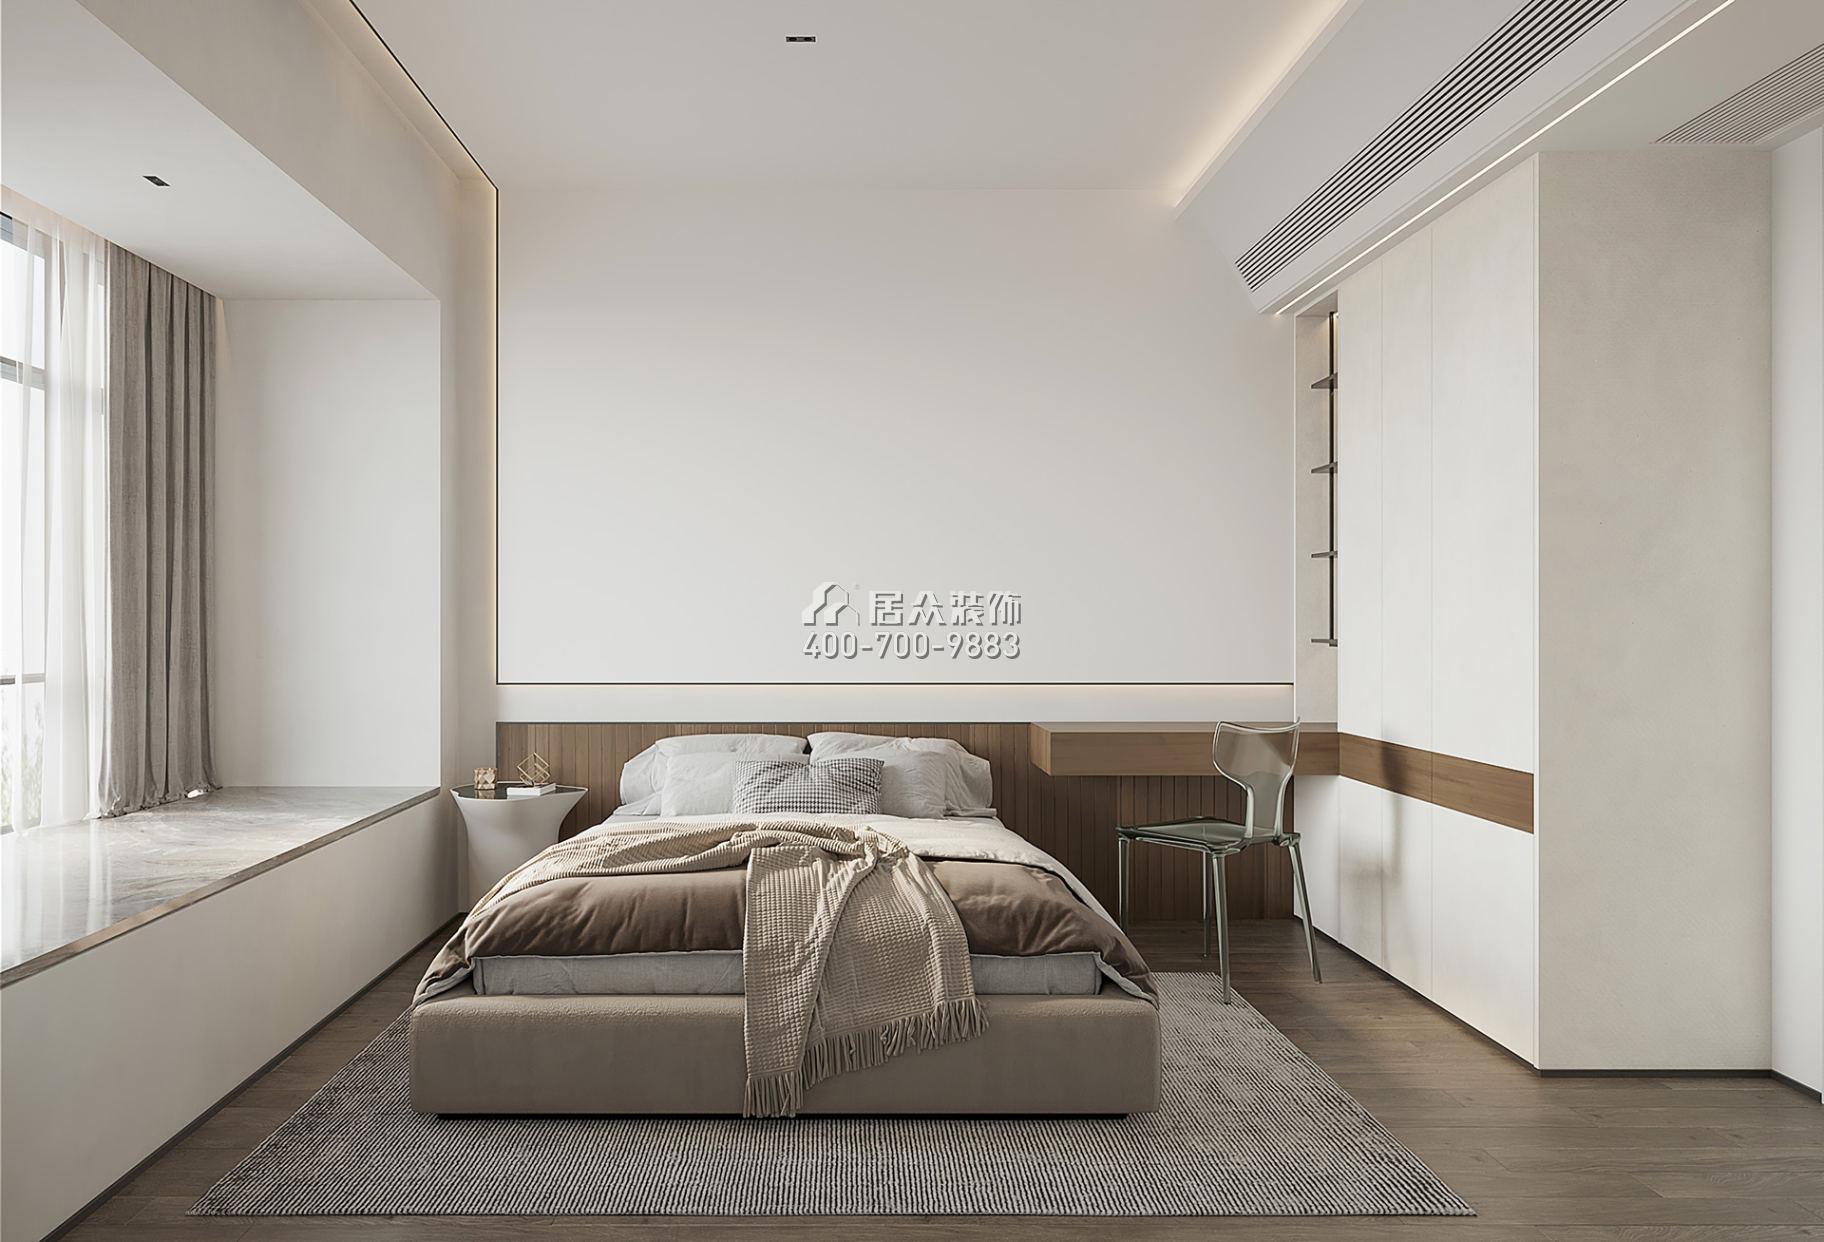 新錦安海納公館110平方米現代簡約風格平層戶型臥室裝修效果圖